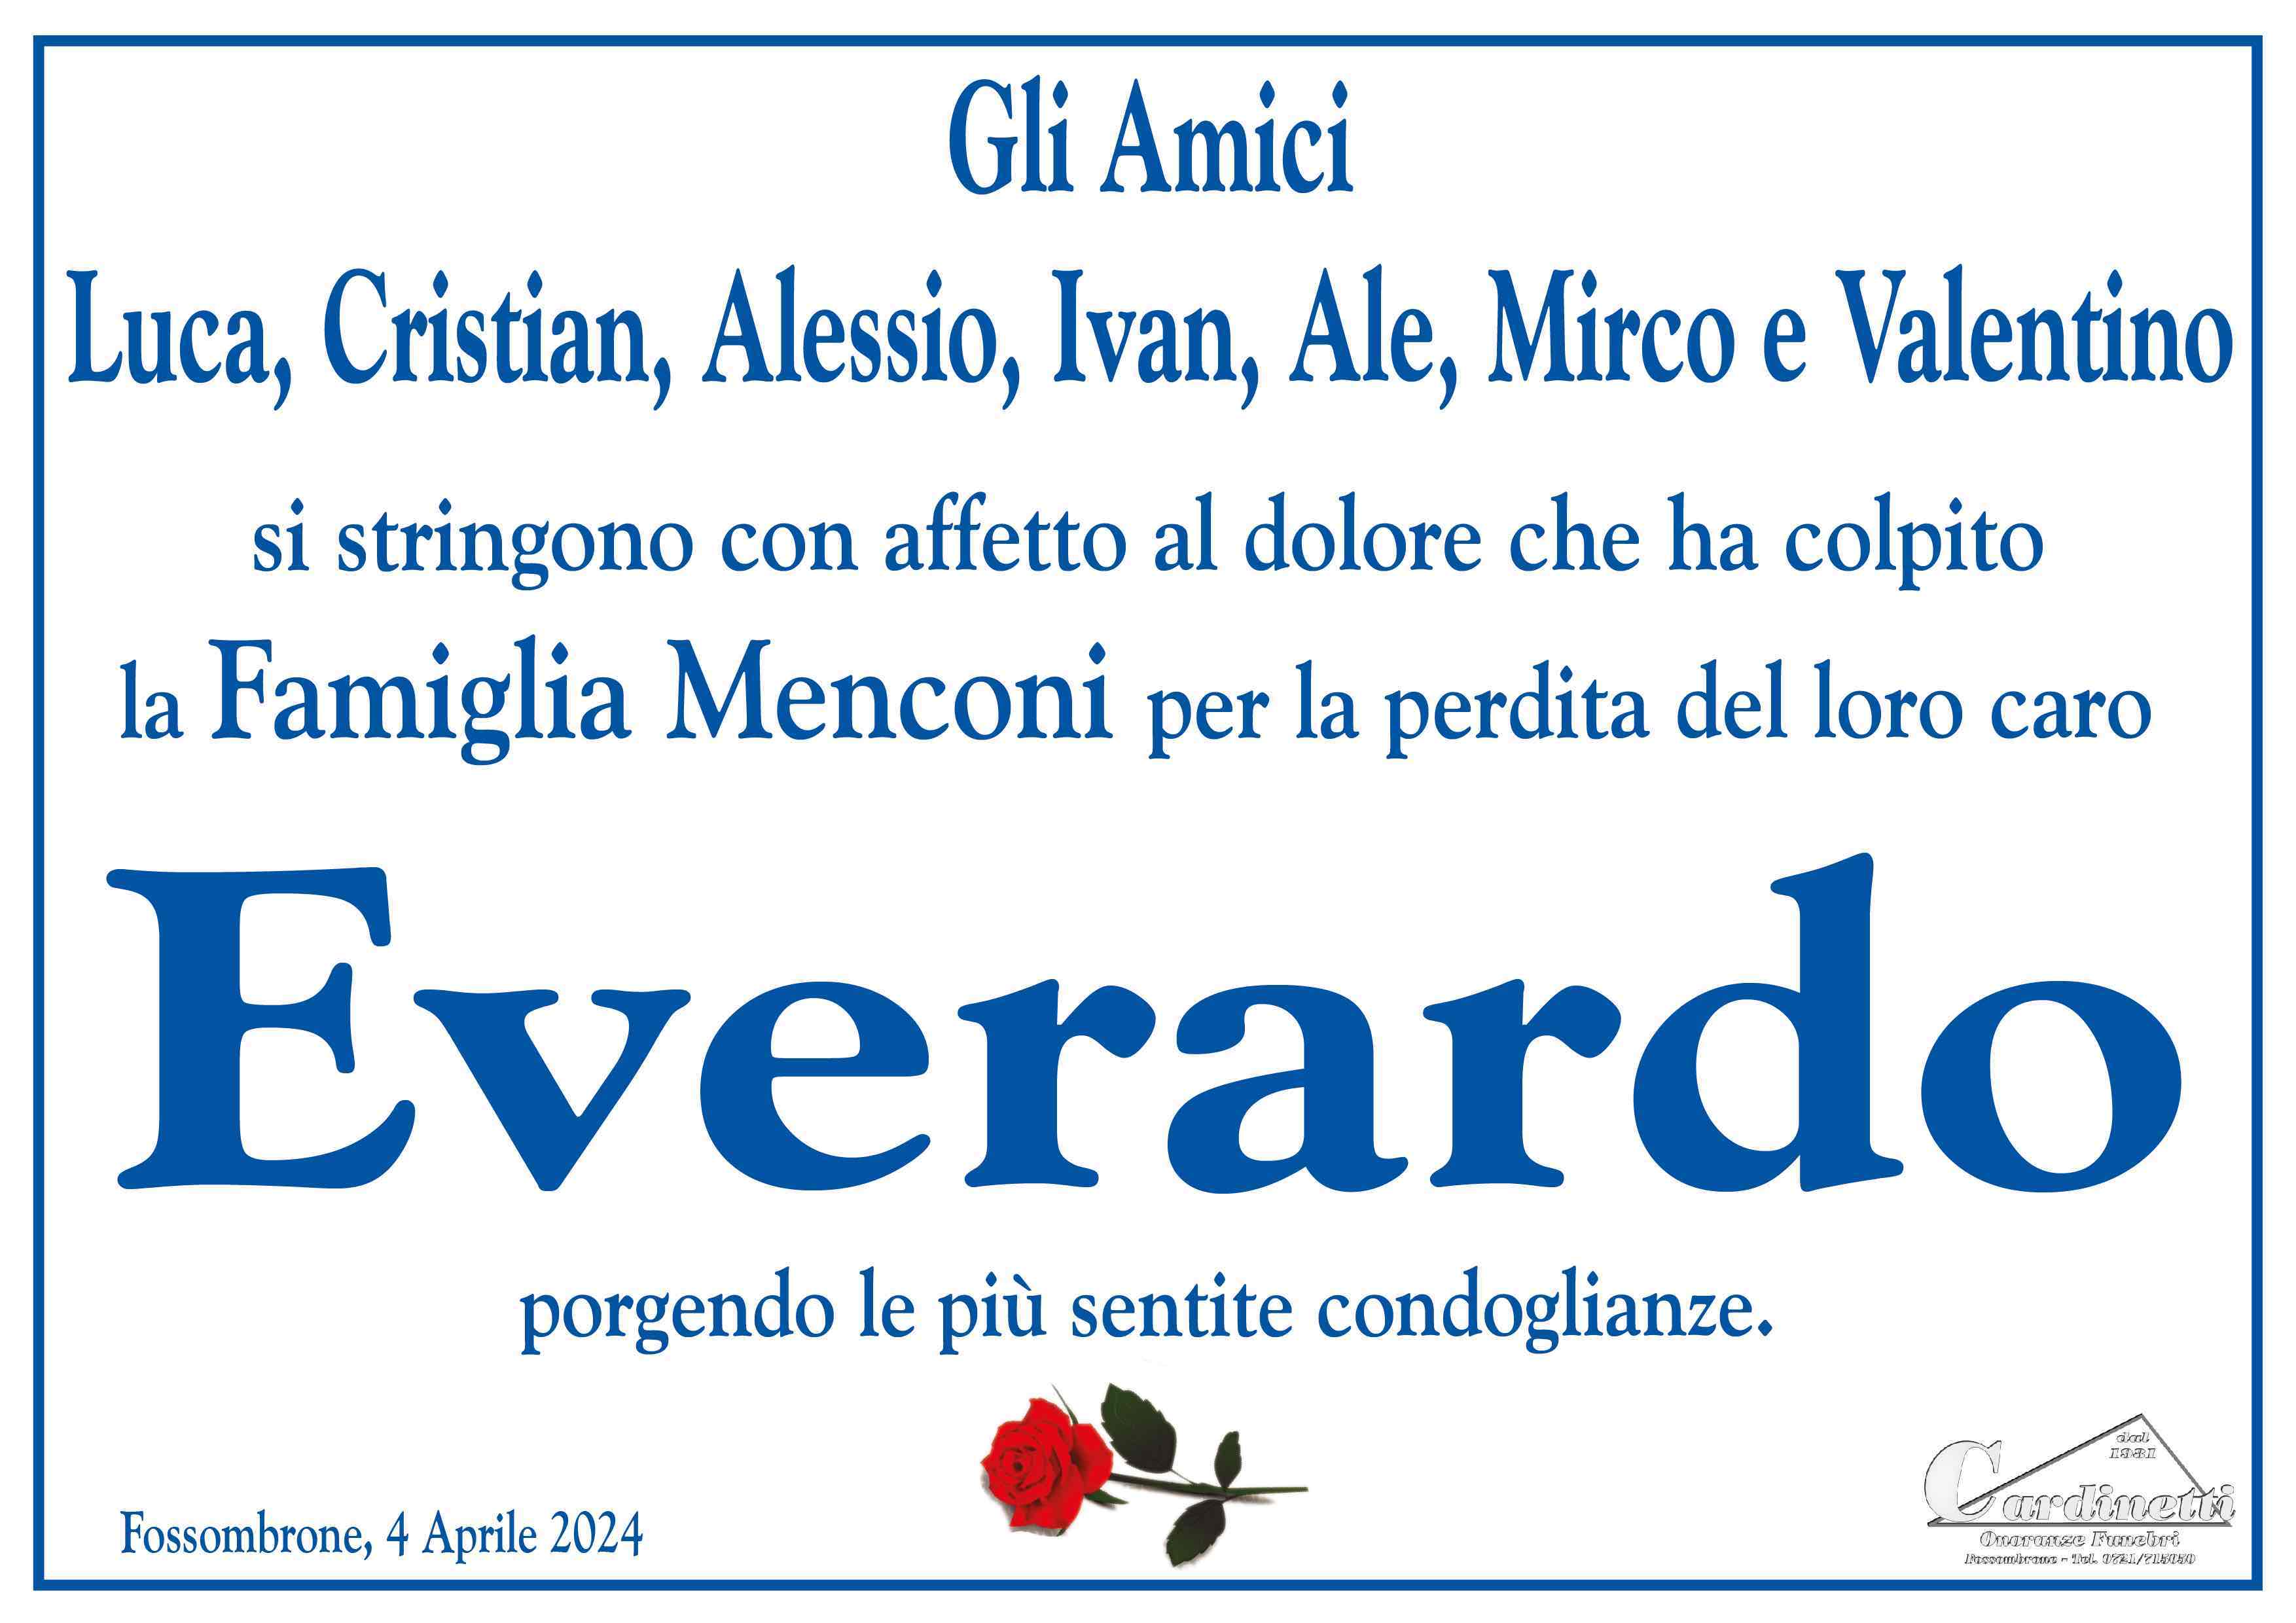 Everardo Menconi